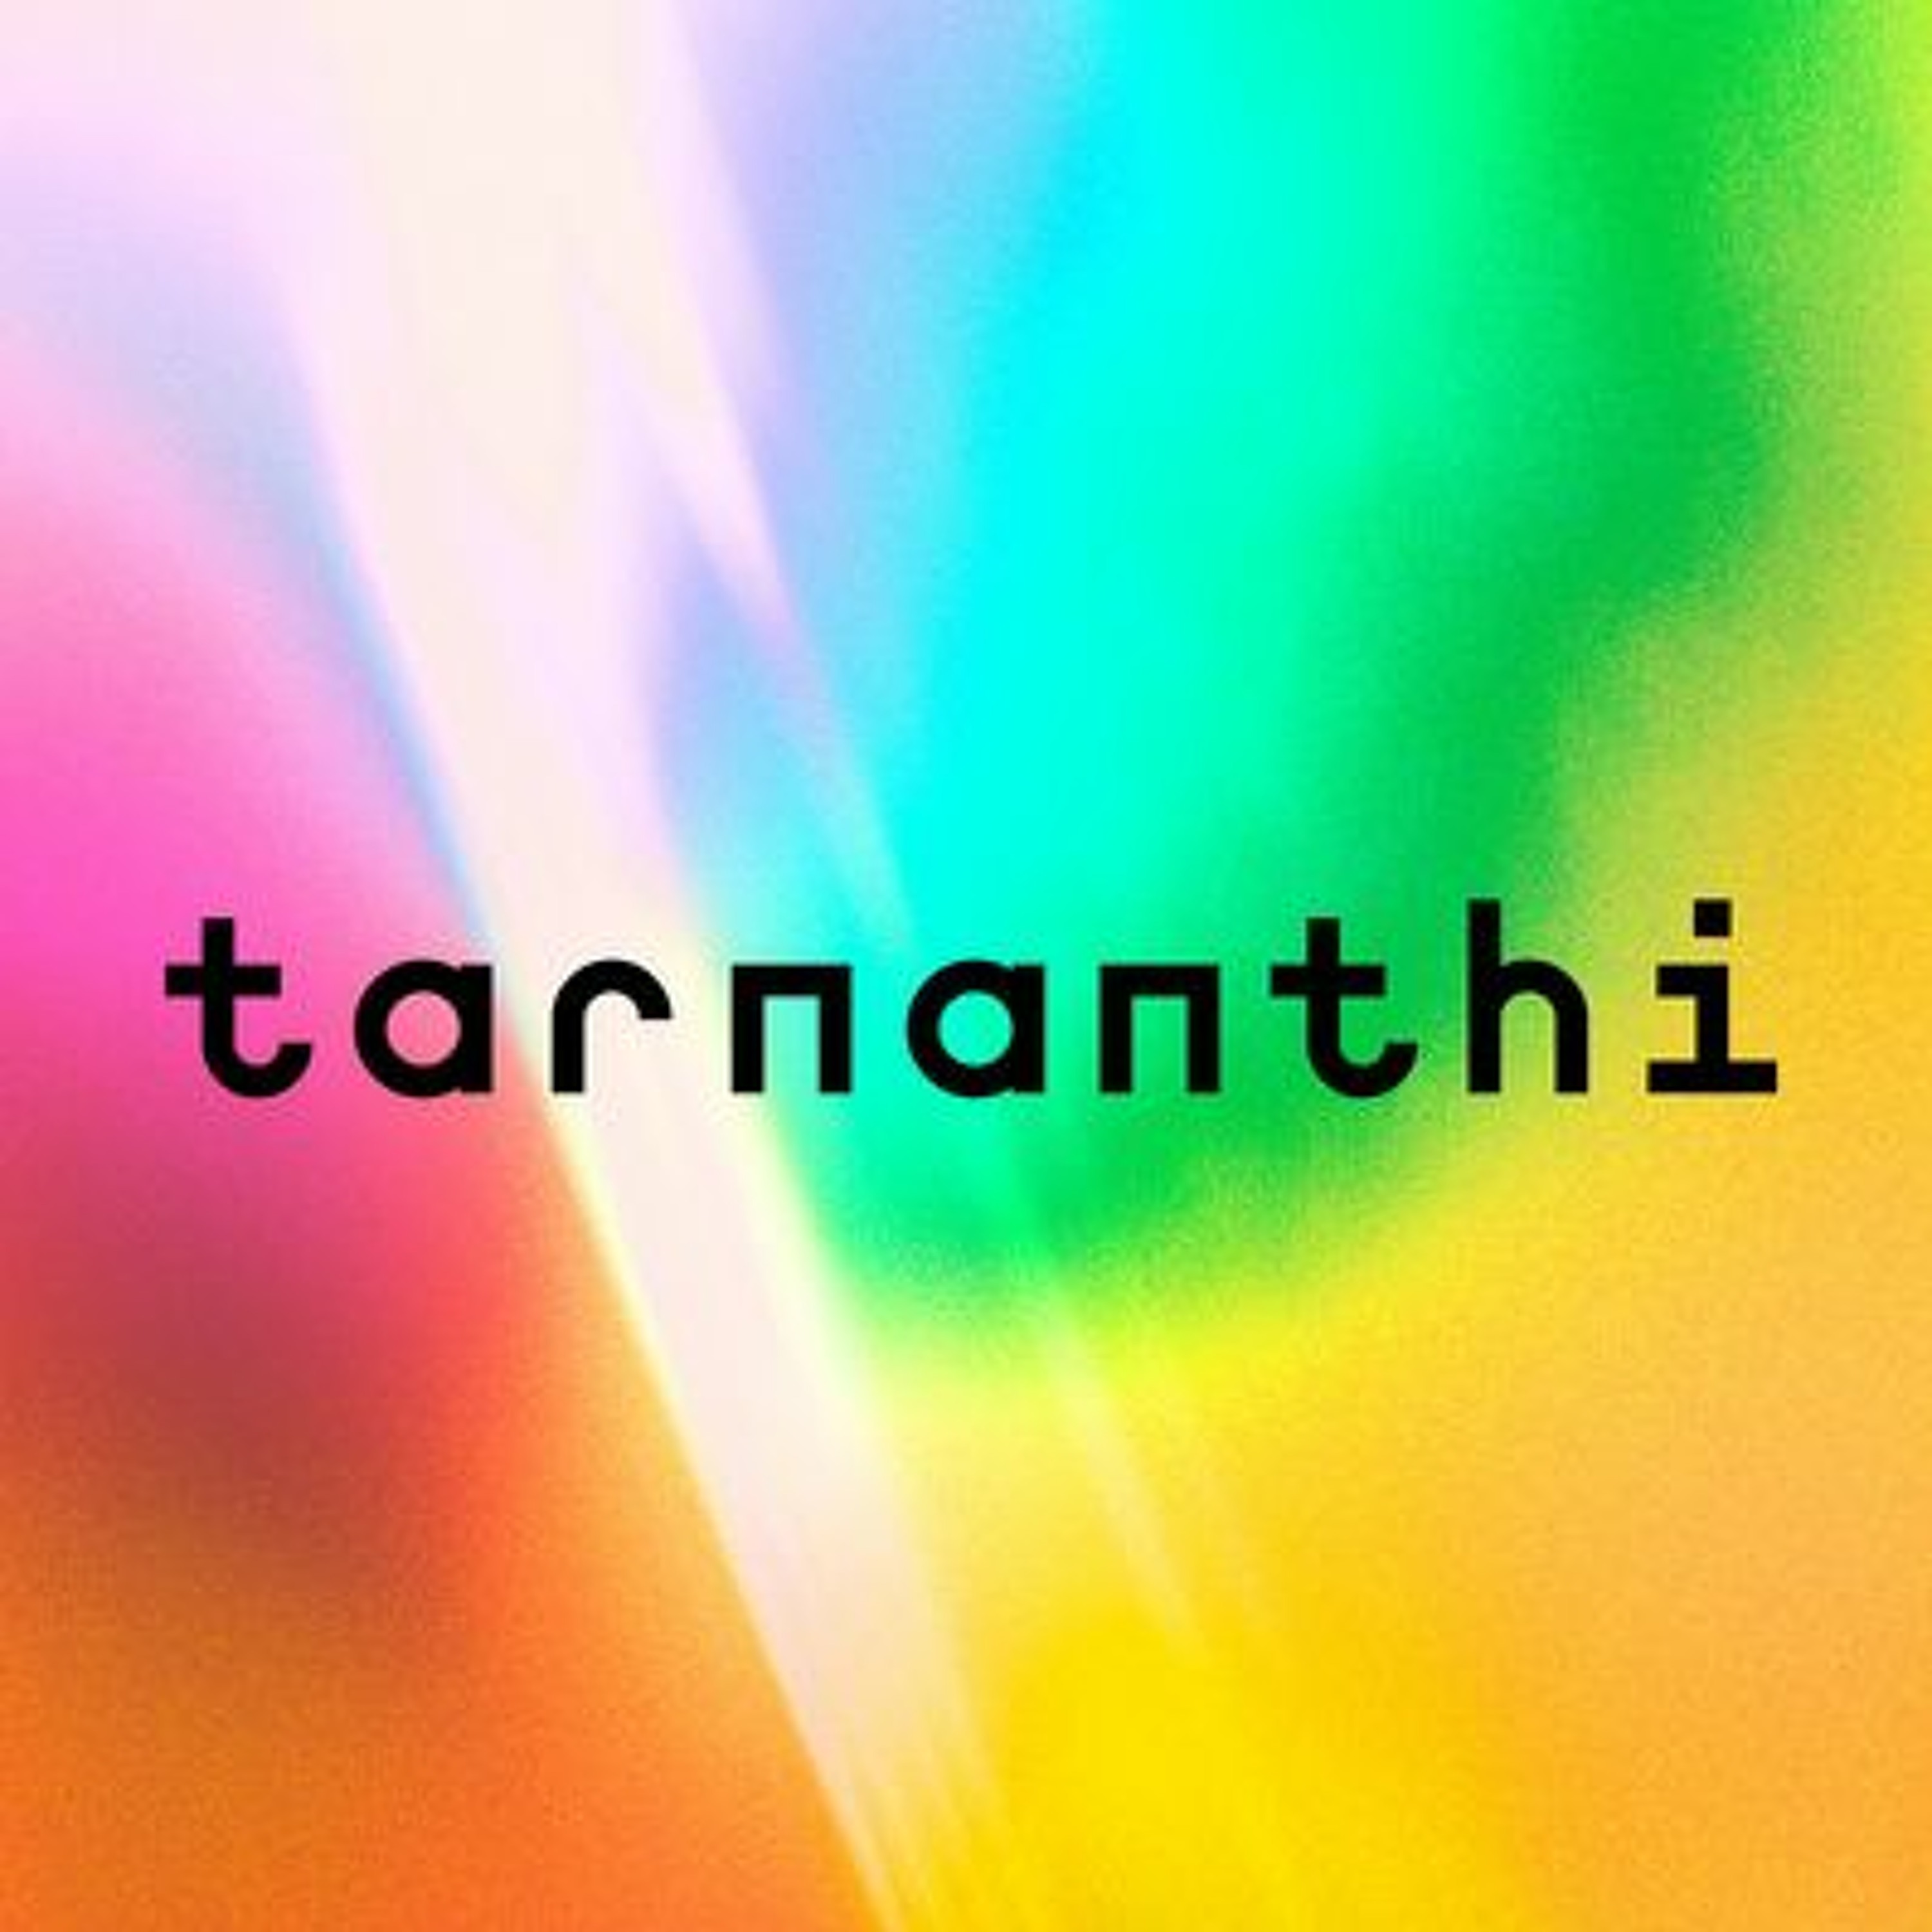 Tarnanthi Artist Interview: Maree Clarke